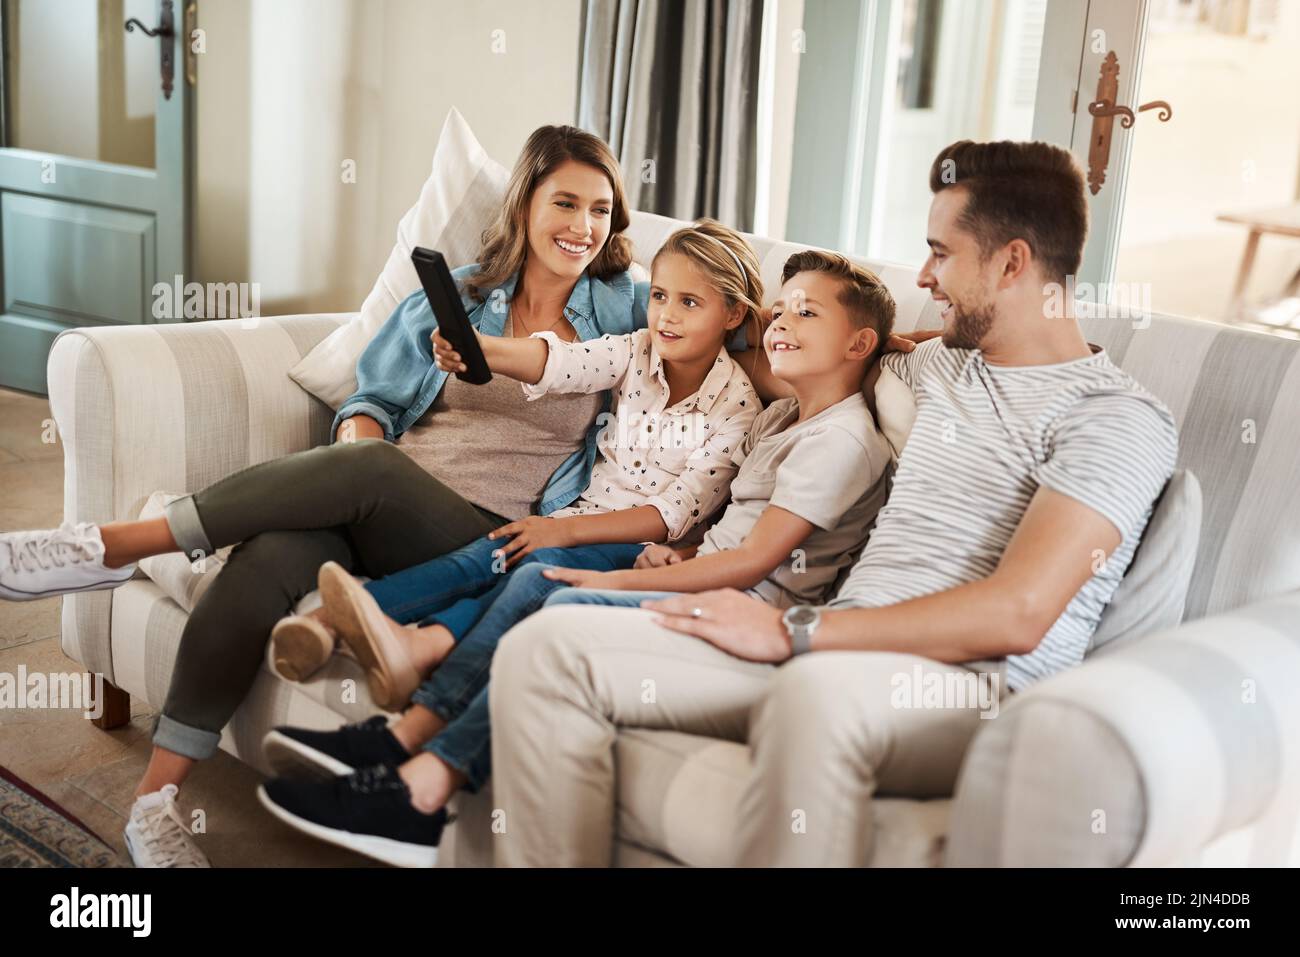 Am Wochenende ist Zeit für die Familie. Eine glückliche junge Familie, die sich auf dem Sofa entspannt und zu Hause gemeinsam fernsieht. Stockfoto